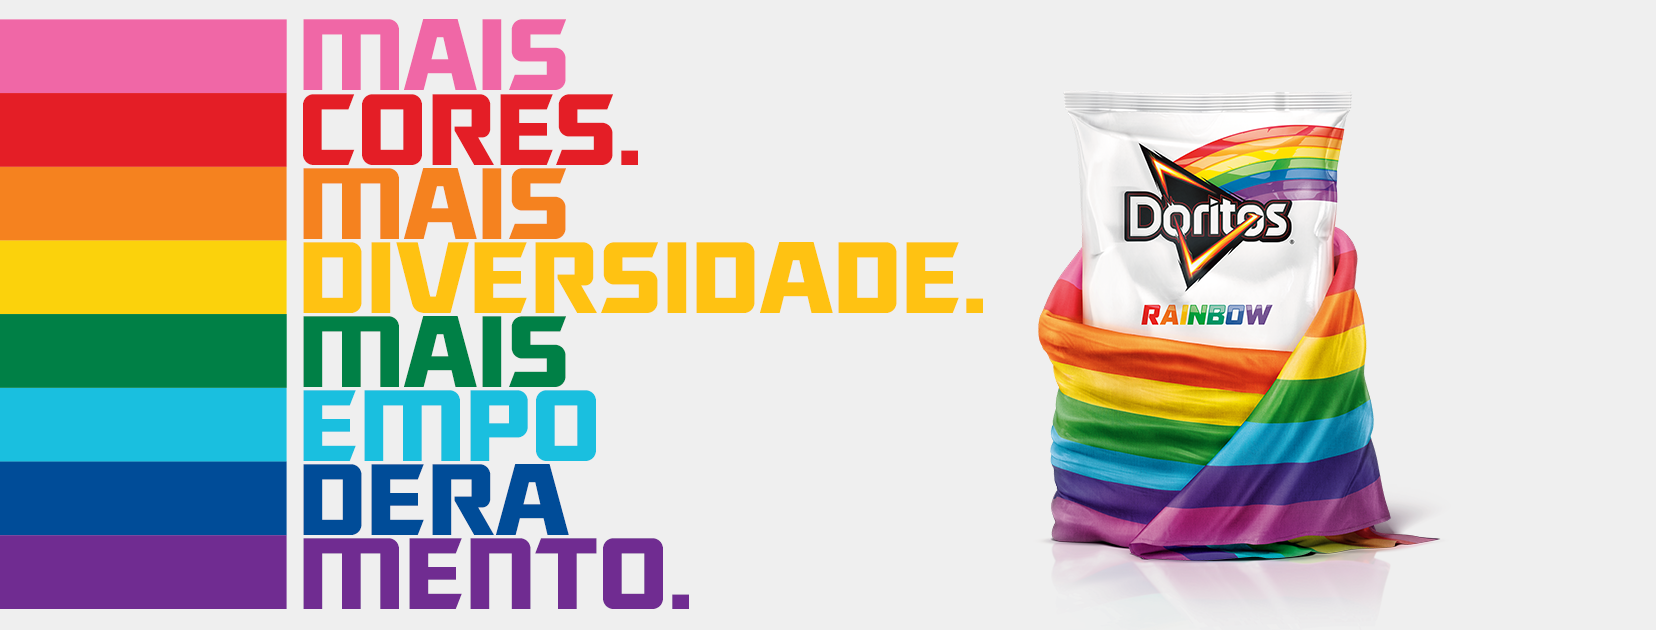 Doritos Rainbow, criado no mês da parada LGBT (Foto: Divulgação)